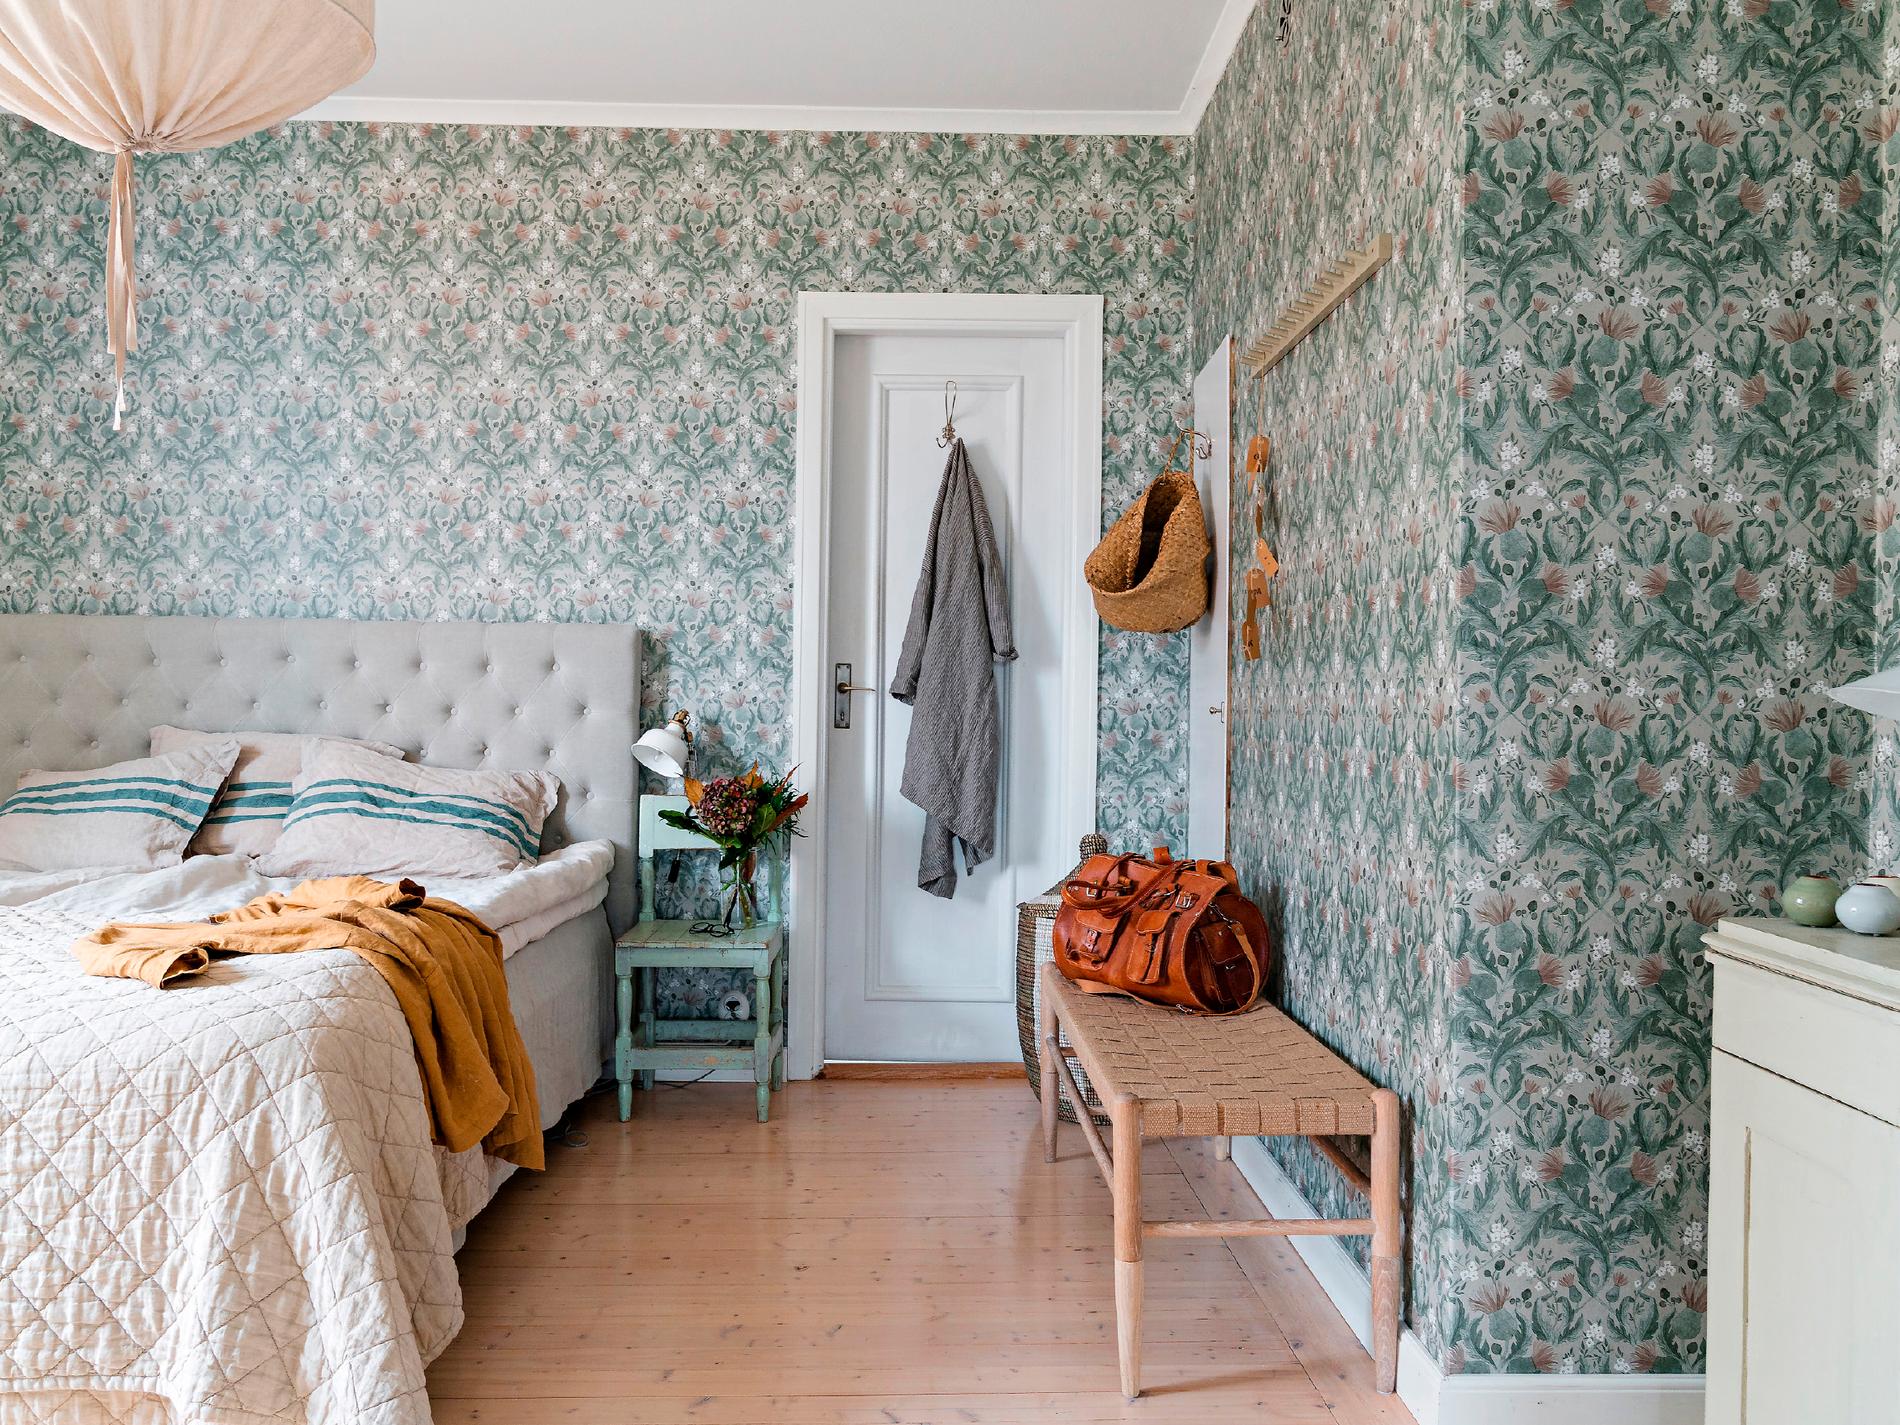 Fridas och Anders sovrum har fått en remake med tapeten Thistle från Boråstapeter som går i svala dämpade nyaser av grått och blågrönt.  Textilier i mjuka beige nyanser gör rummet harmoniskt och vilsamt.